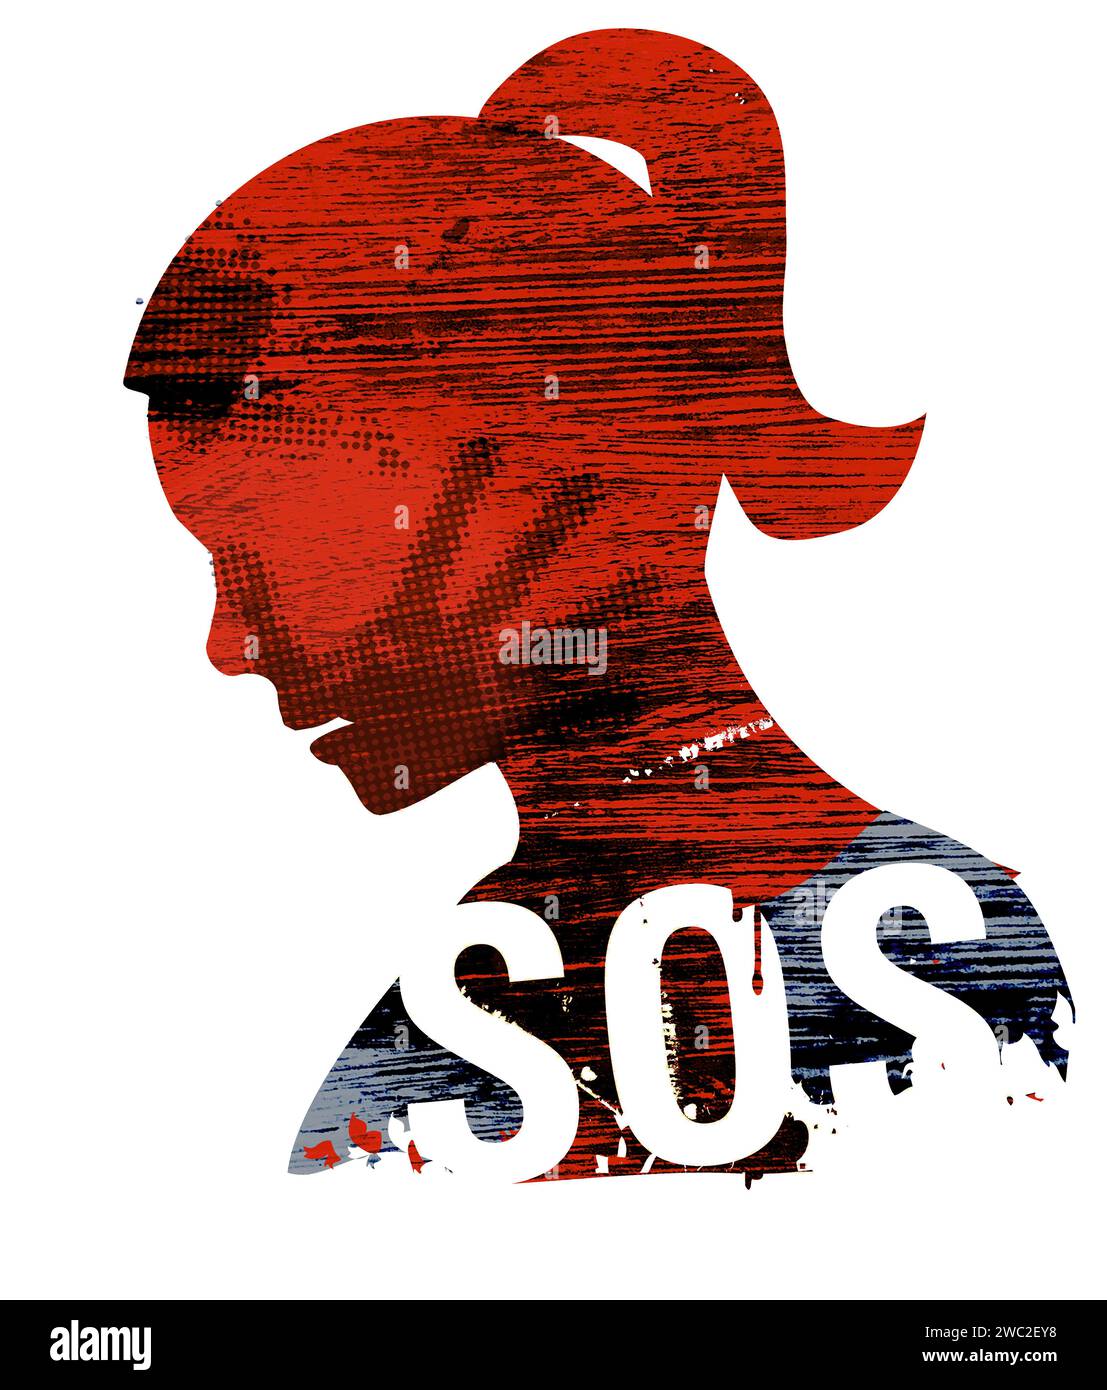 SOS-Gewalt gegen Frau. Junge Frau Kopf Grunge Silhouette mit Handdruck auf dem Gesicht und Schild SOS. Stockfoto